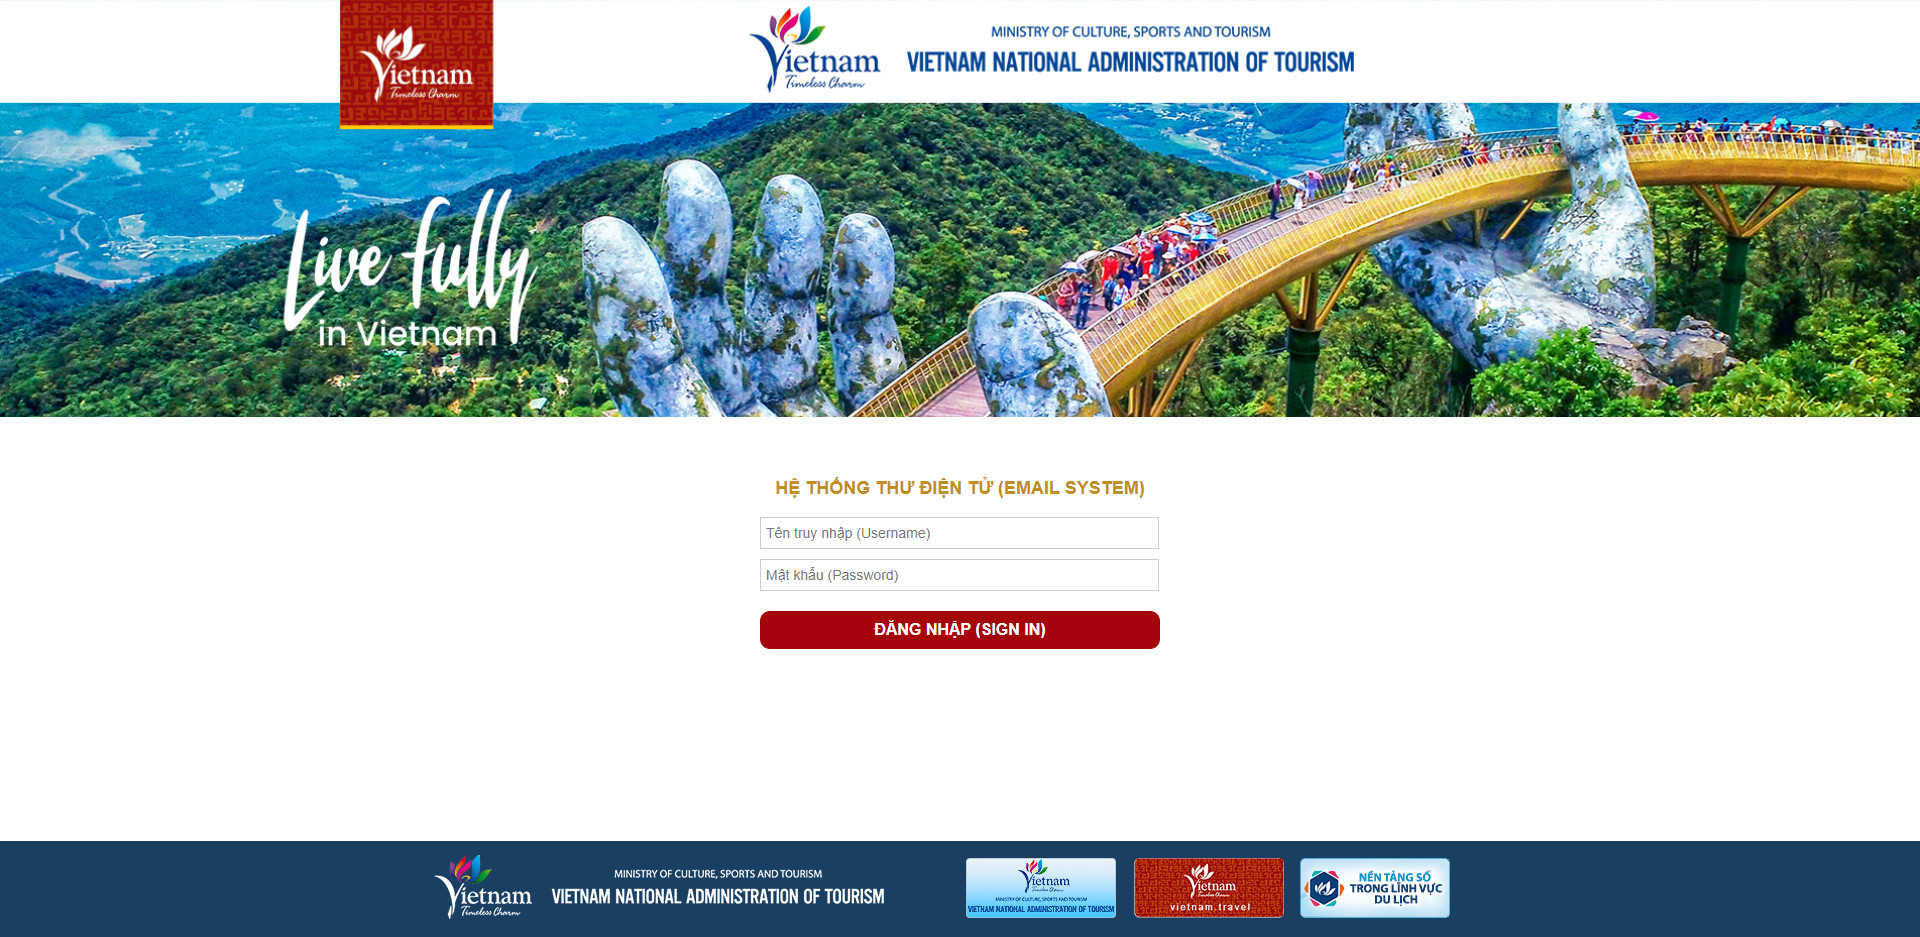 Trung tâm Thông tin du lịch ra mắt hệ thống Email xúc tiến quảng bá du lịch Việt Nam